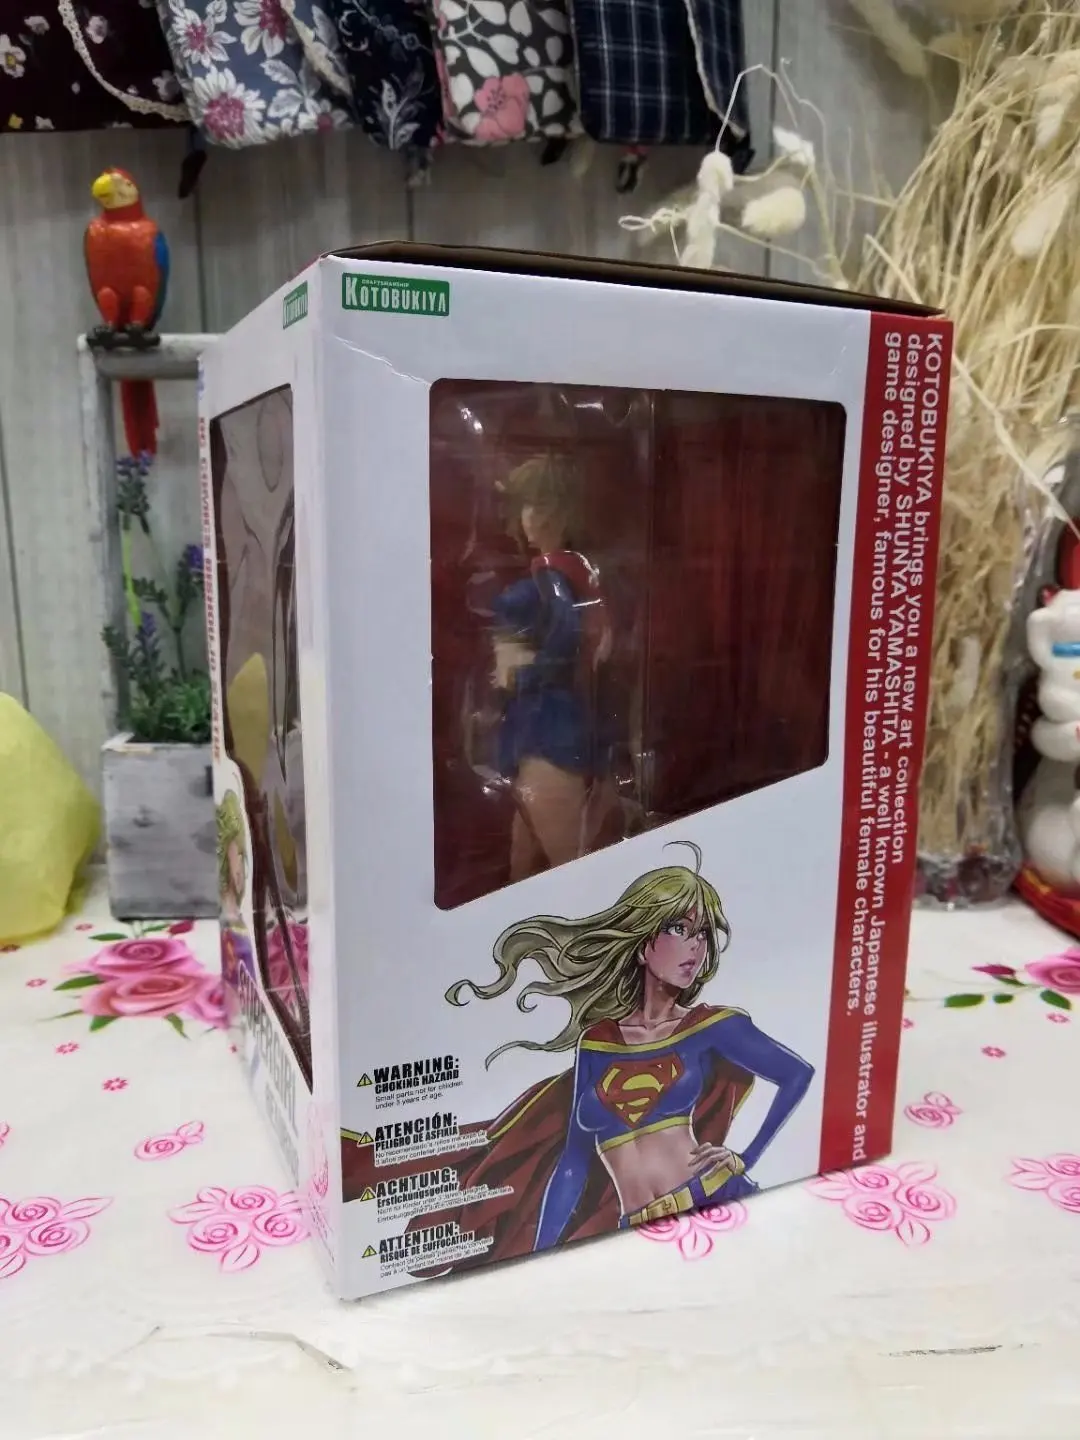 DC Comics Bishoujo Вселенная Супергерл фигурка Kotobukiya полная коллекционная игрушка 21 см